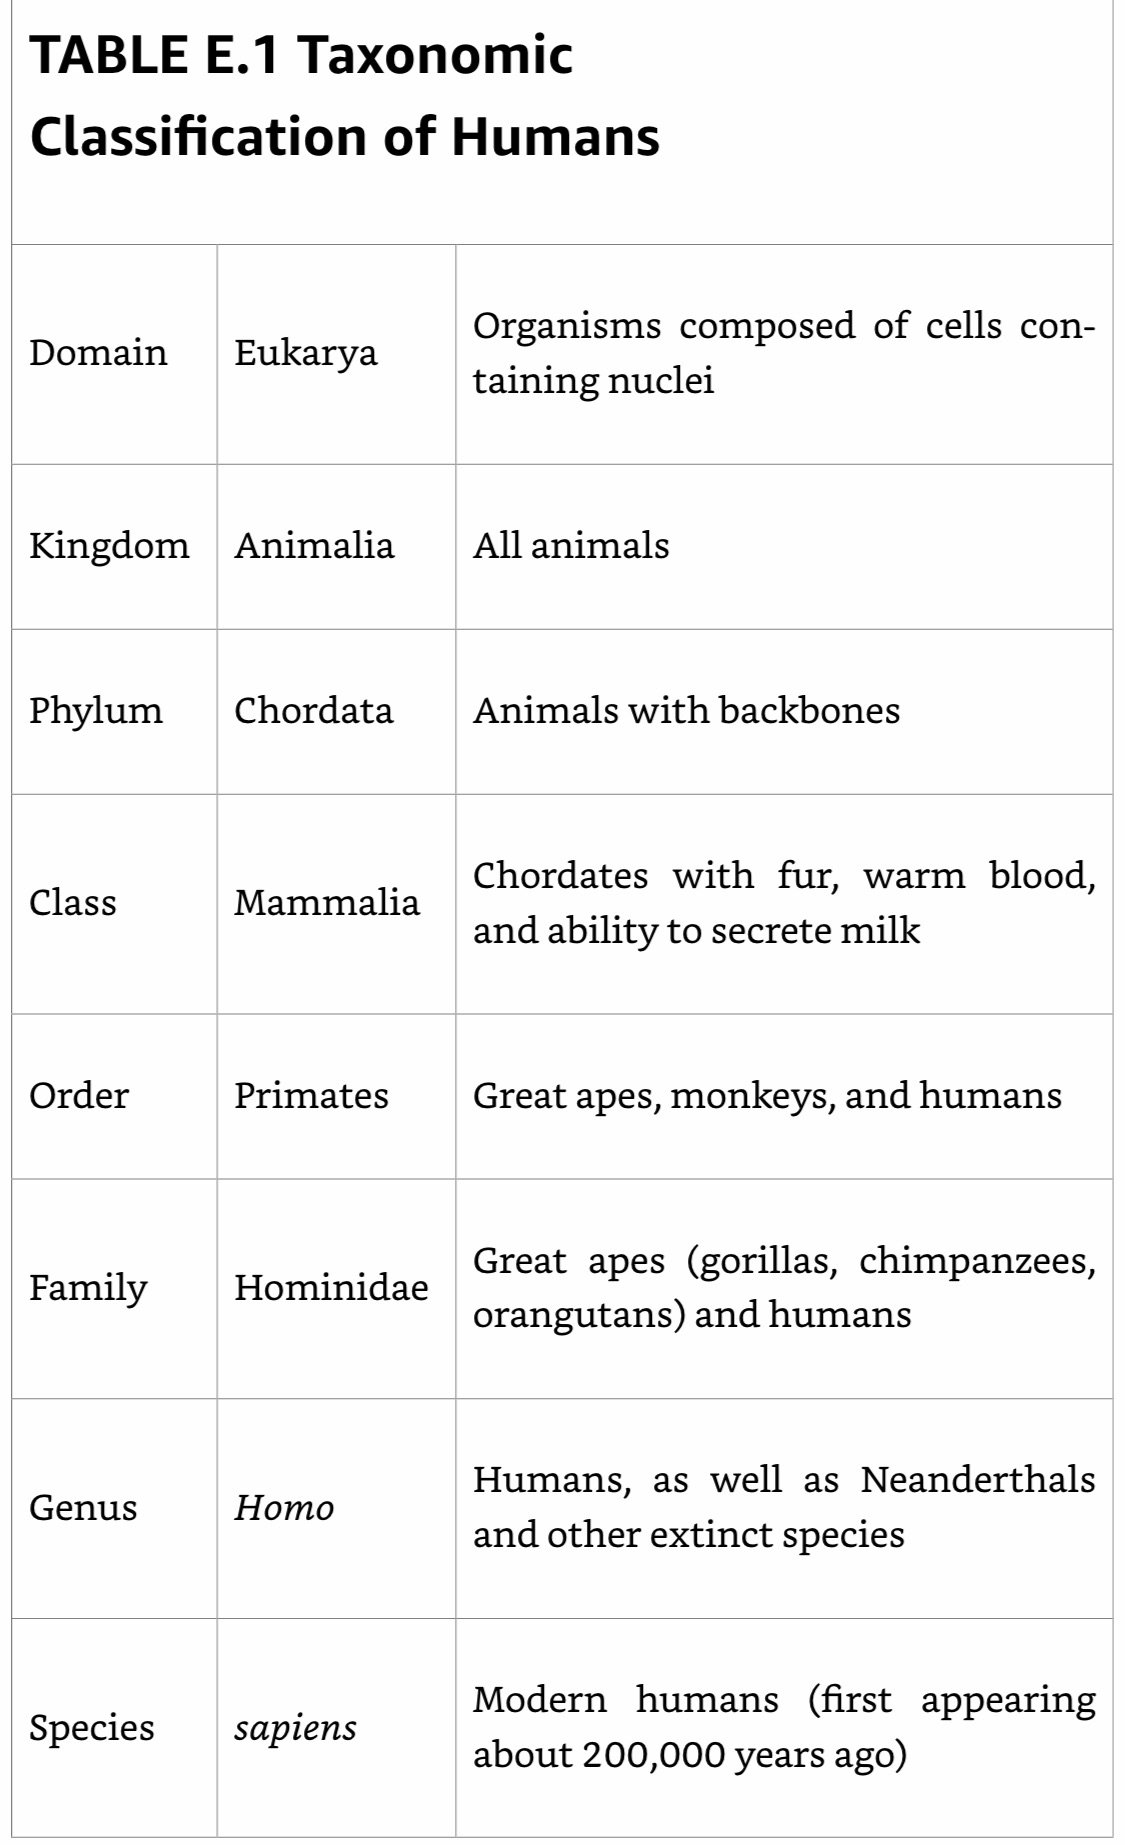 Taxonomic Classifications of Humans.jpeg